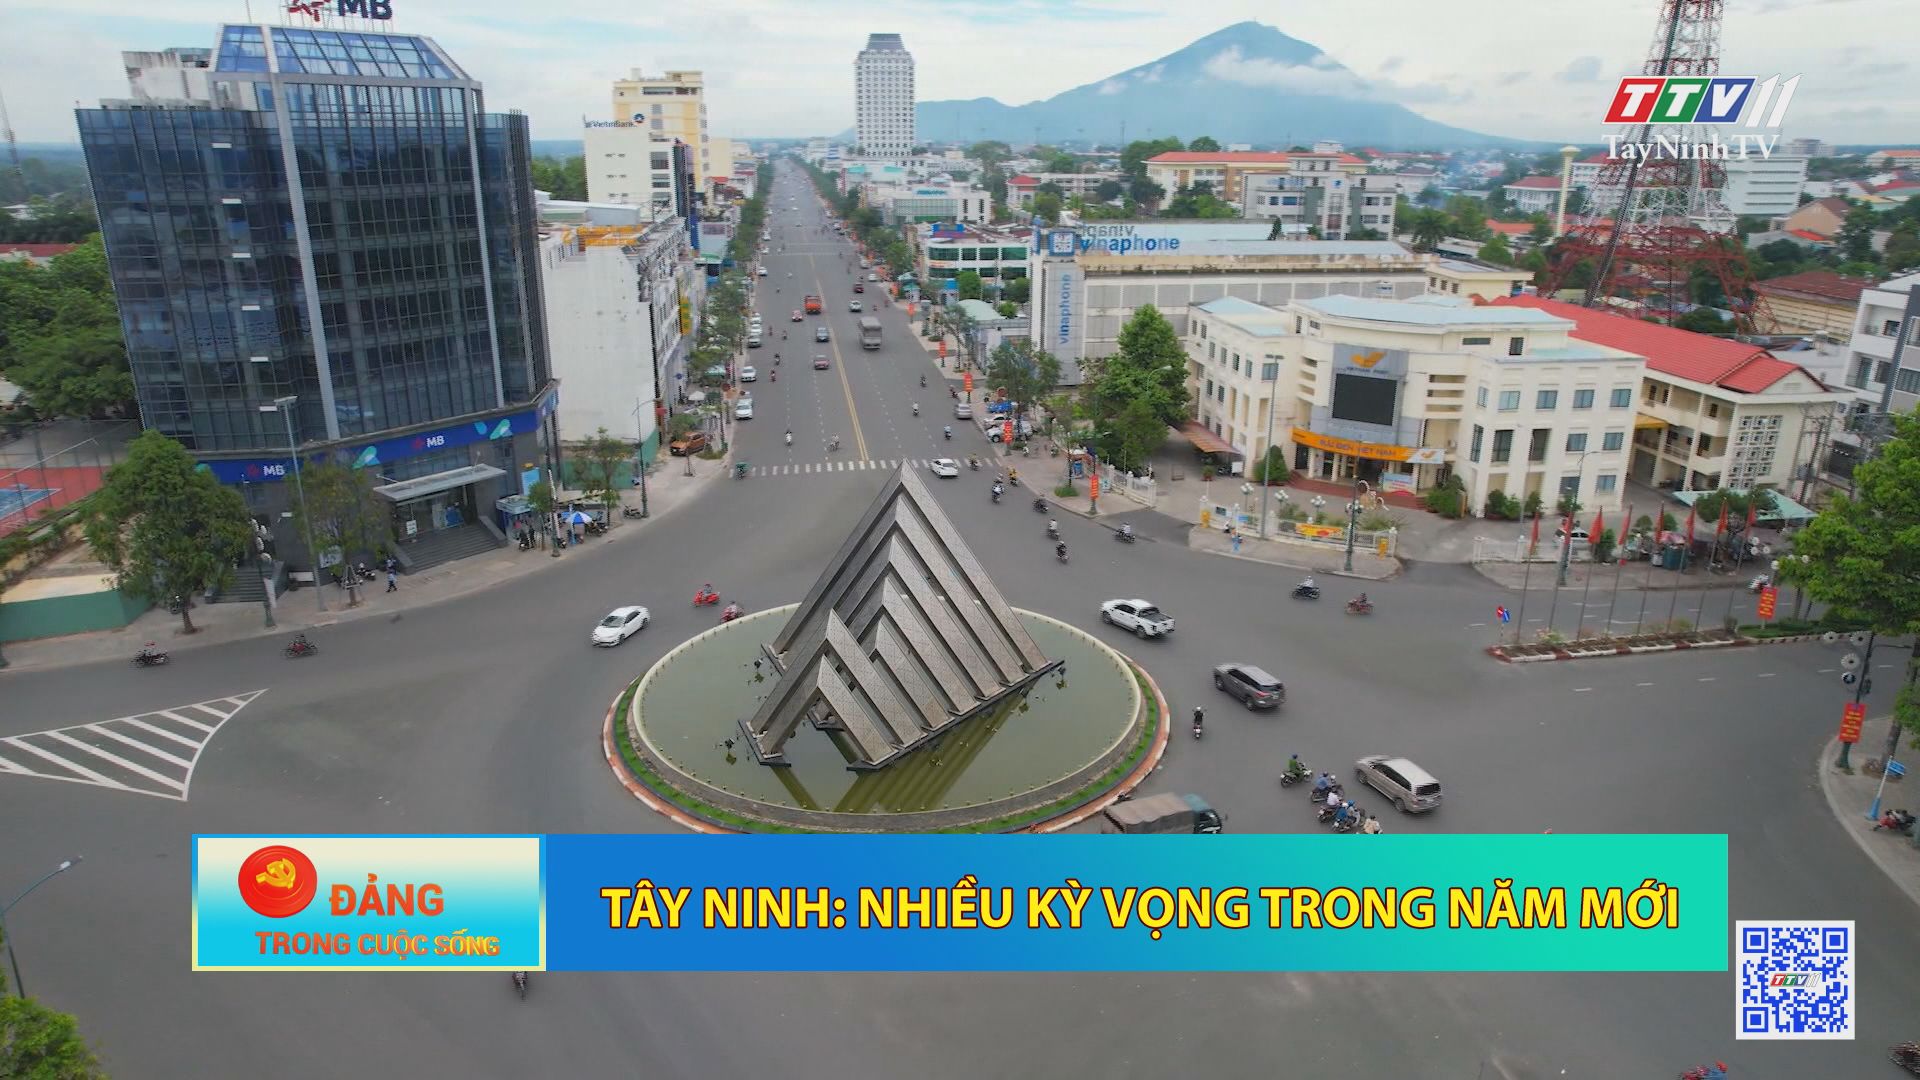 Tây Ninh: nhiều kỳ vọng trong nam mới | Đảng trong cuộc sống | TayNinhTV